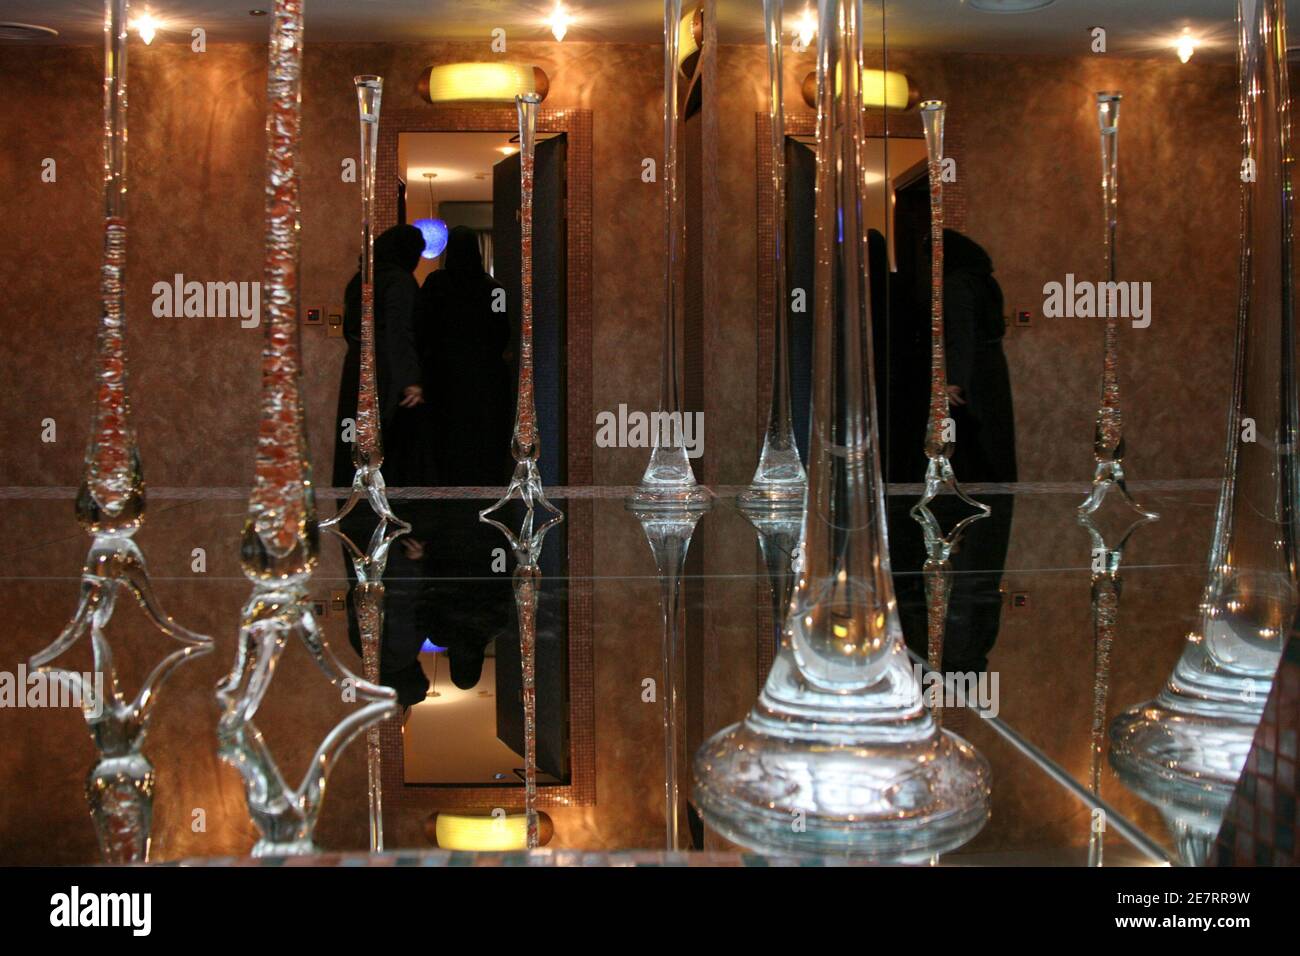 Le donne saudite sono viste all'interno del Luthan Hotel, che si rivolge esclusivamente alle donne, a Riyadh 19 marzo 2008. Il primo hotel del regno, esclusivamente per le donne, è stato aperto il mercoledì ed offre alloggi lussuosi con una gamma completa di strutture per la salute e la bellezza per le Signore che si coccolano lontano dagli occhi accusanti di una società dominata da uomini. REUTERS/Fahad Shadeed (ARABIA SAUDITA) Foto Stock